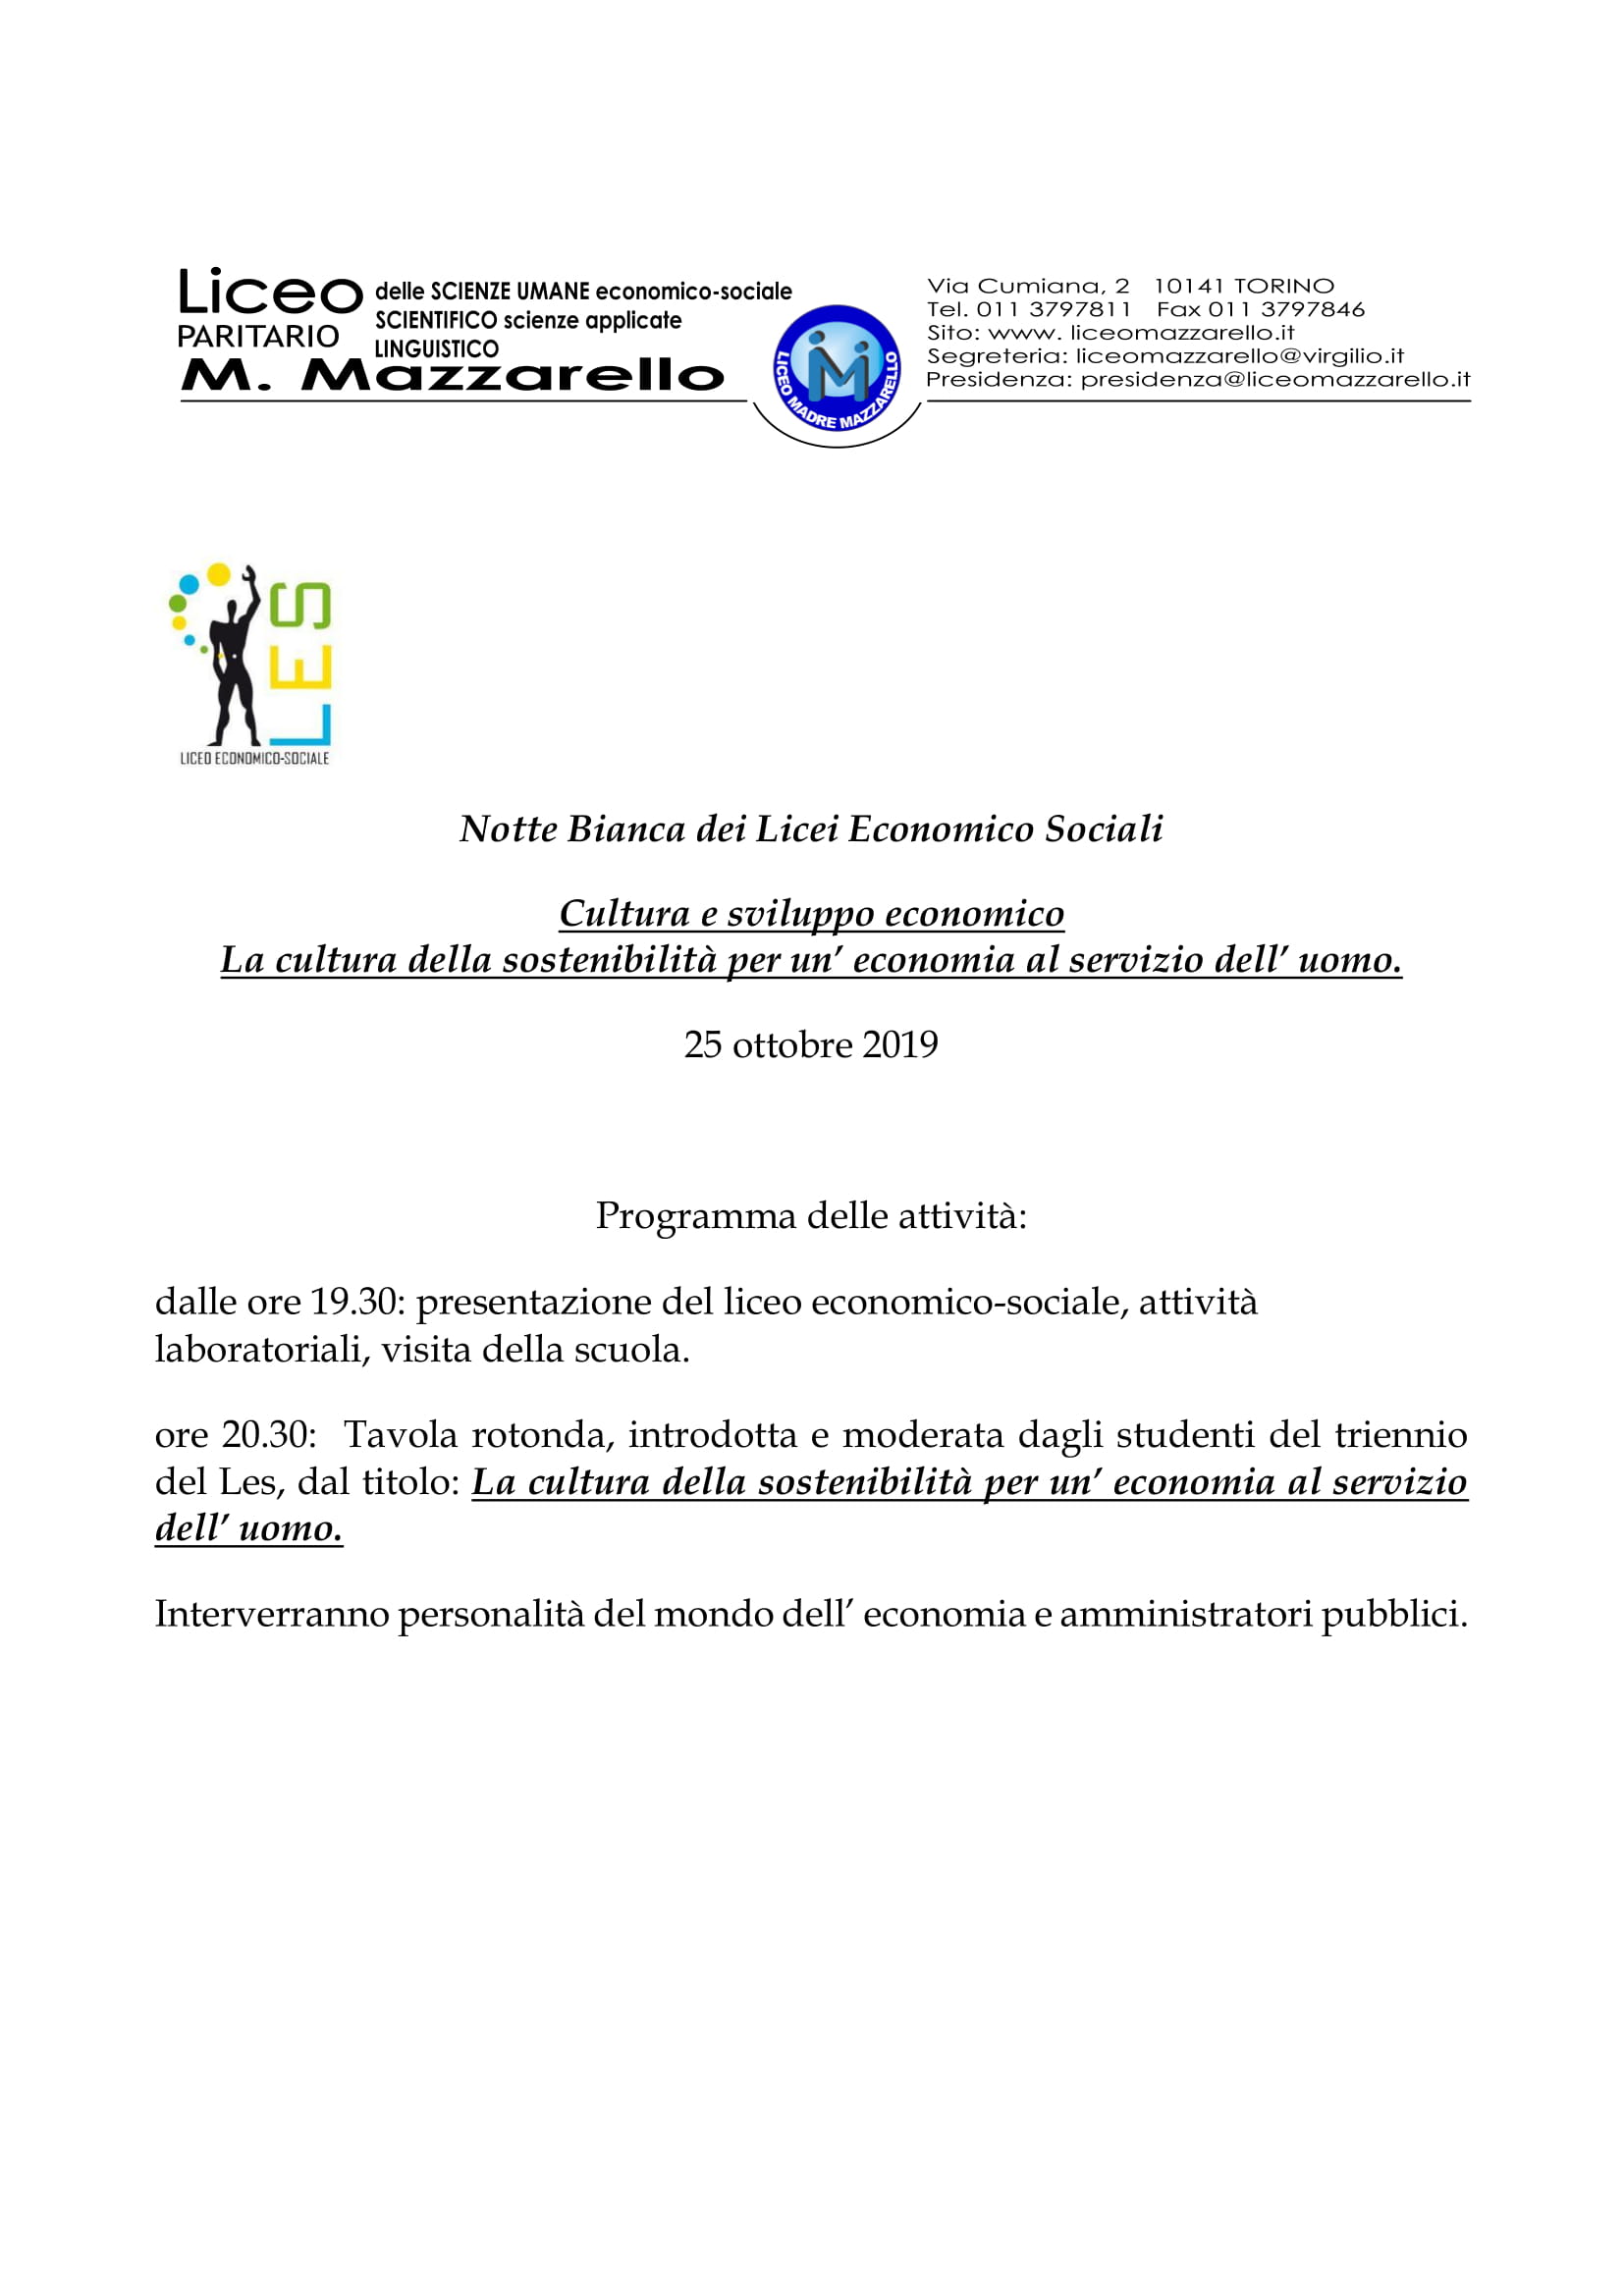 Istituto Mazzarello Torino Programma notte bianca LES 2019 1